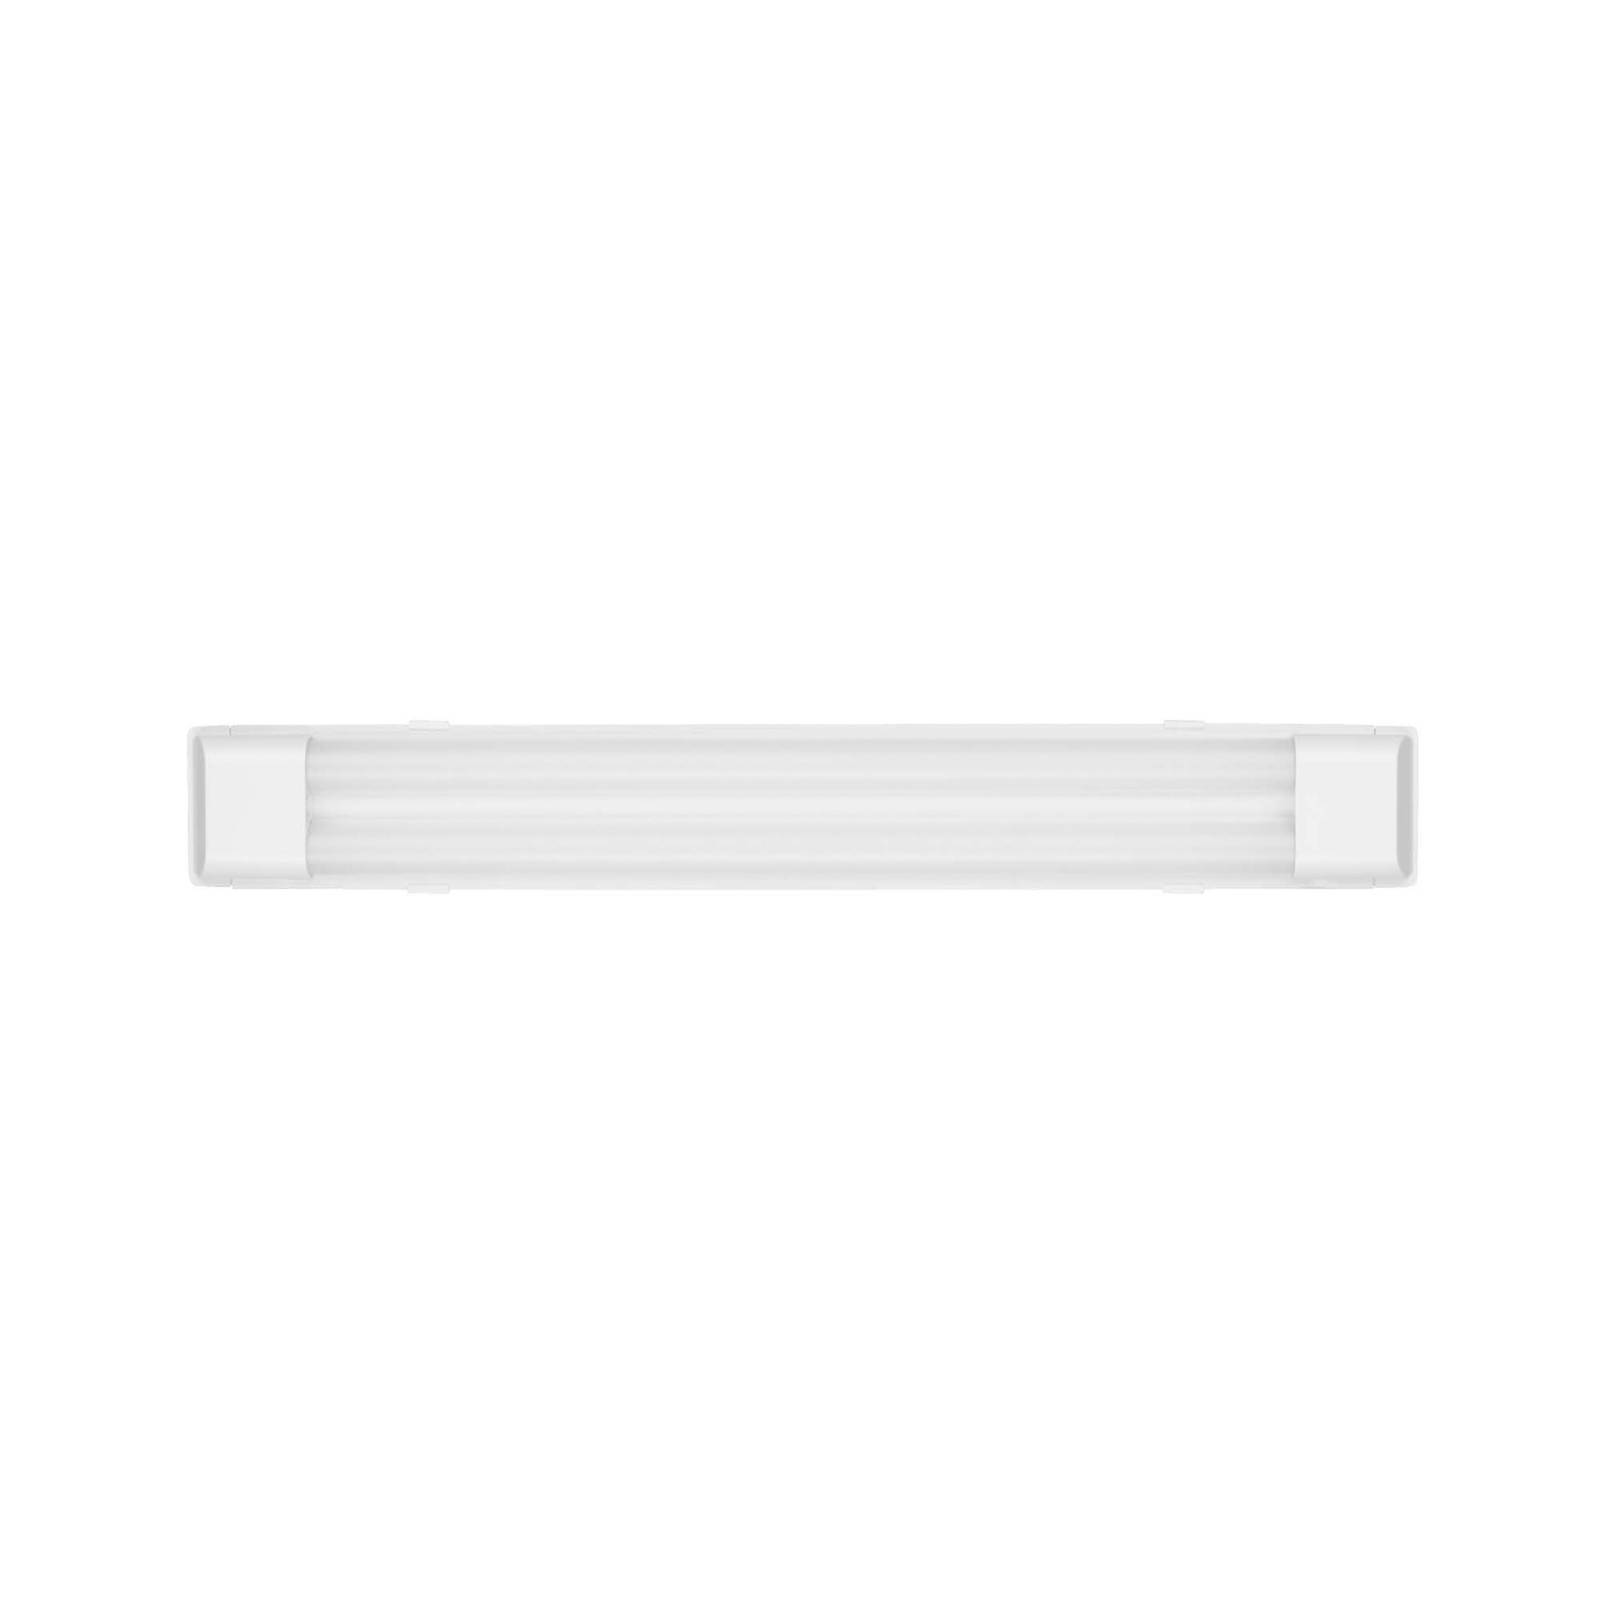 Telefunken LED-Deckenleuchte Maat, Länge 60cm, weiß, 840